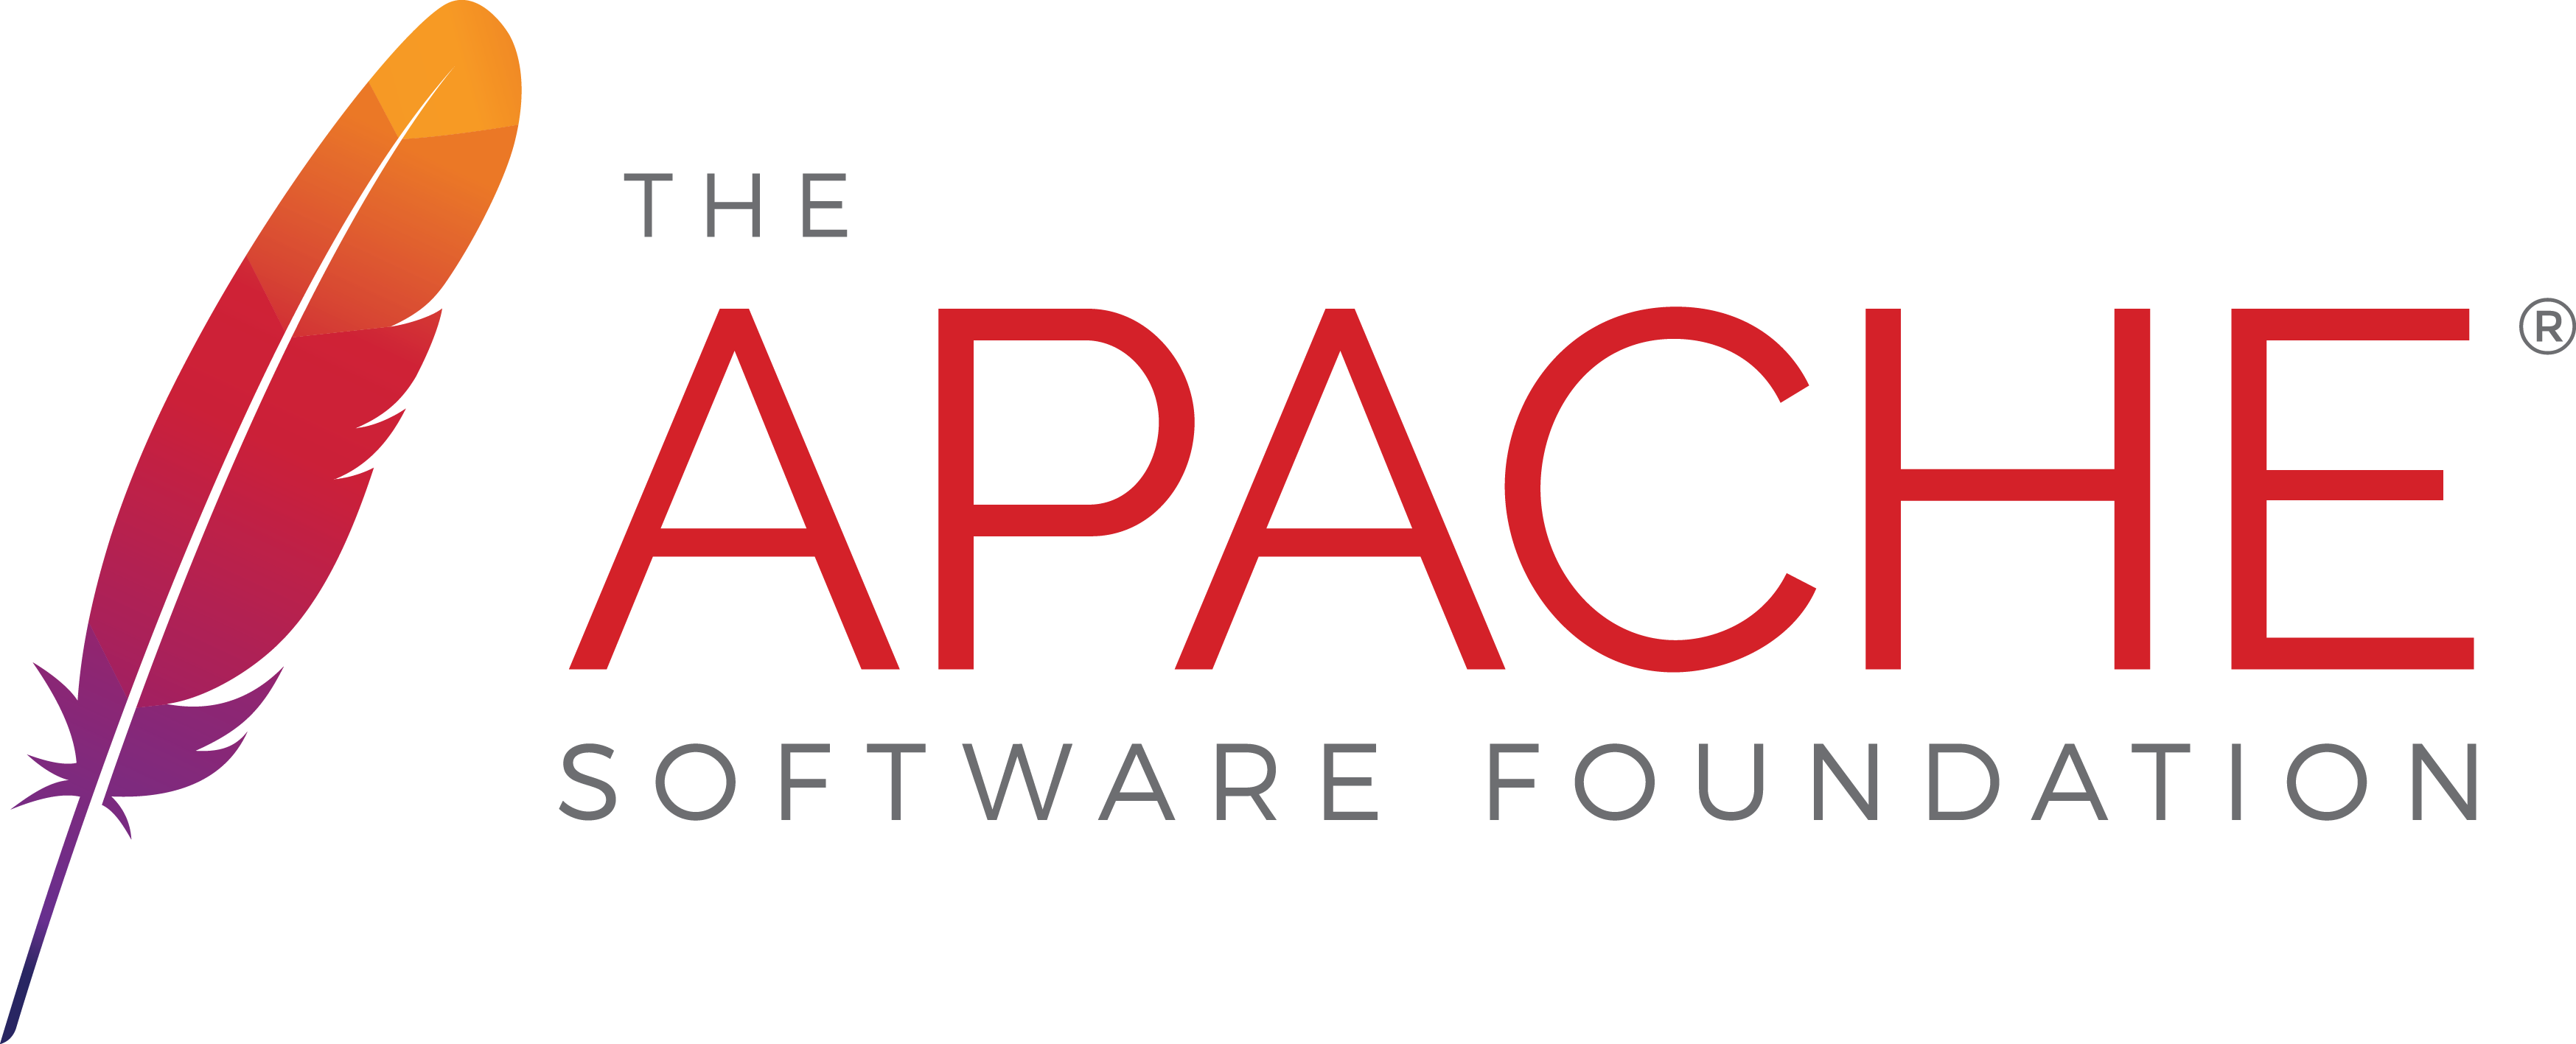 Download Free Png Apache Logo